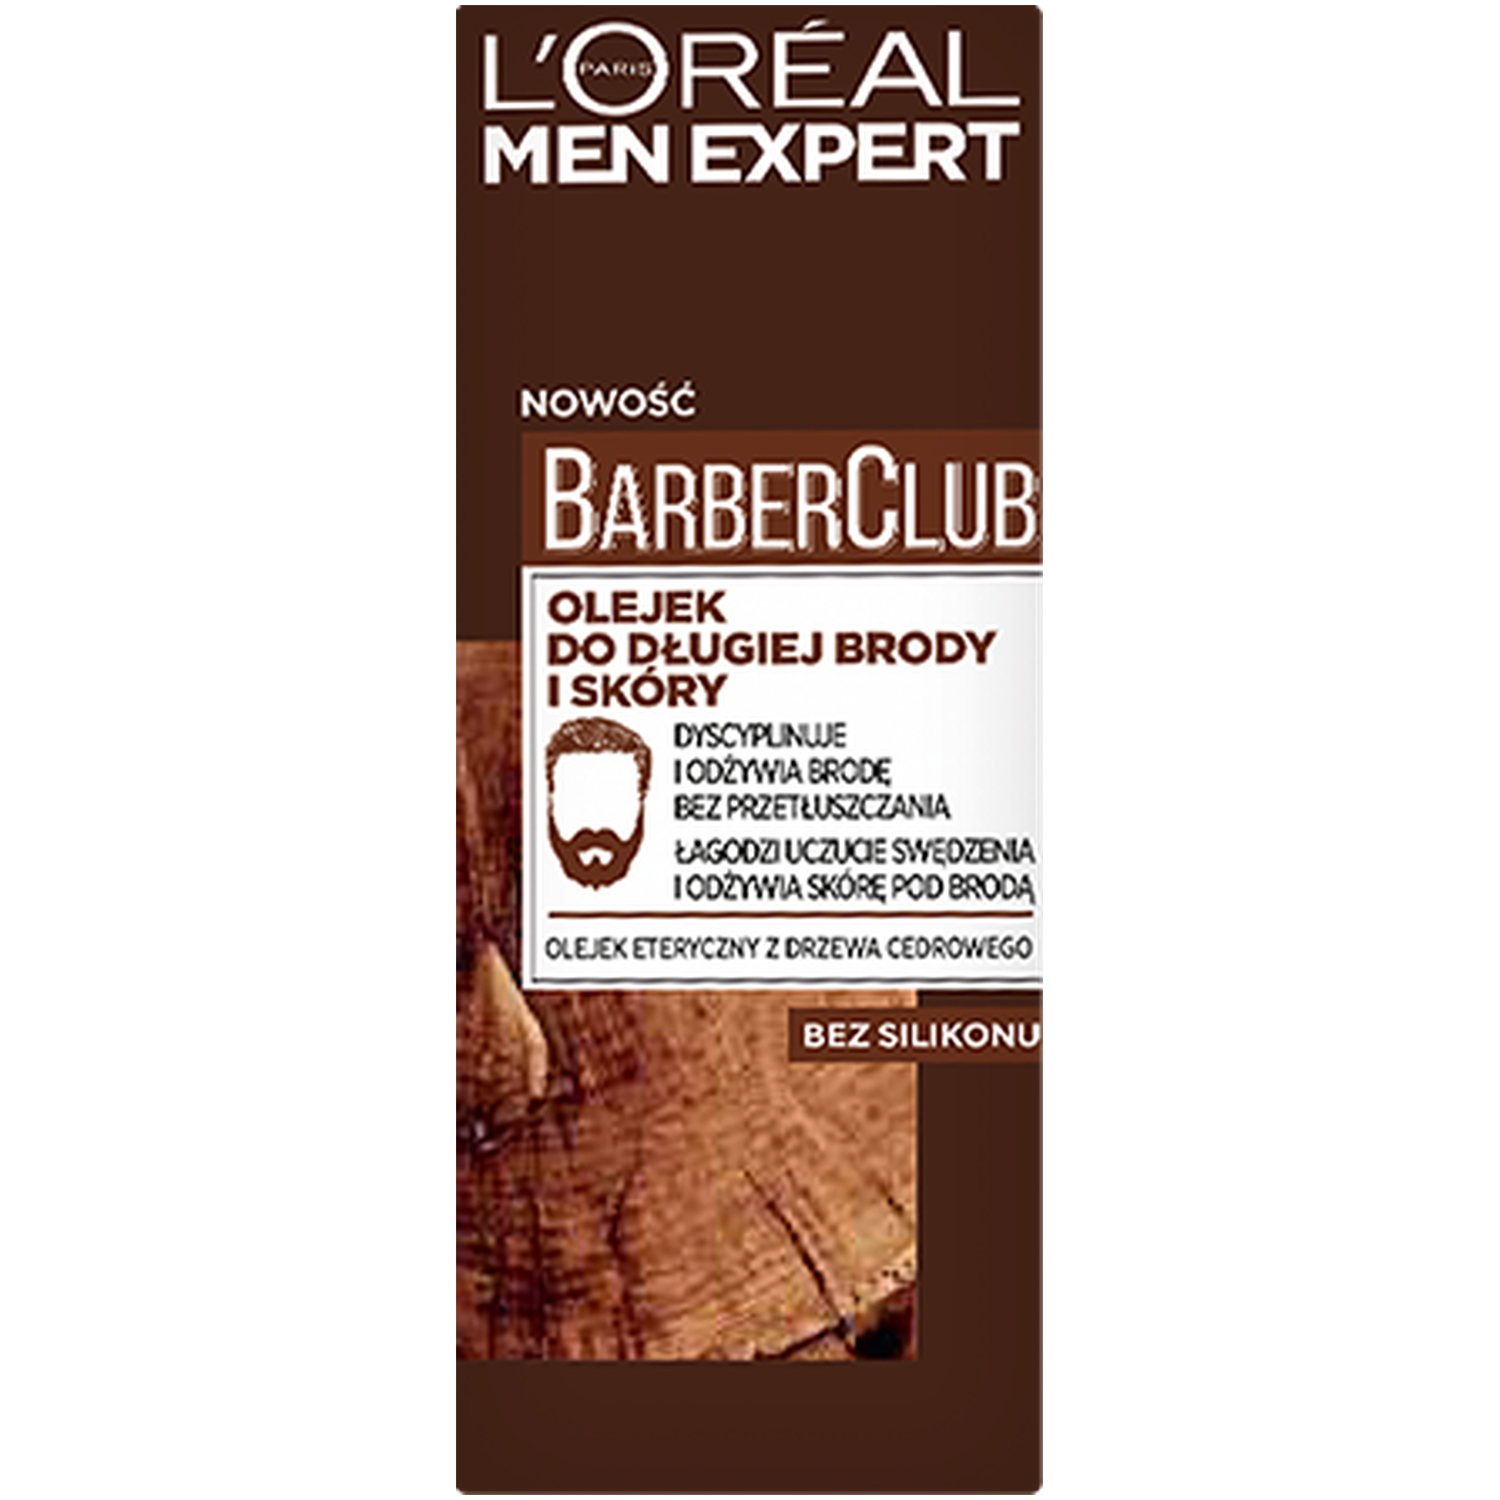 L'Oréal Paris Men Expert Barber Club масло для ухода за длинной бородой и кожей, 30 мл l oréal paris men expert barber club масло для ухода за длинной бородой и кожей 30 мл